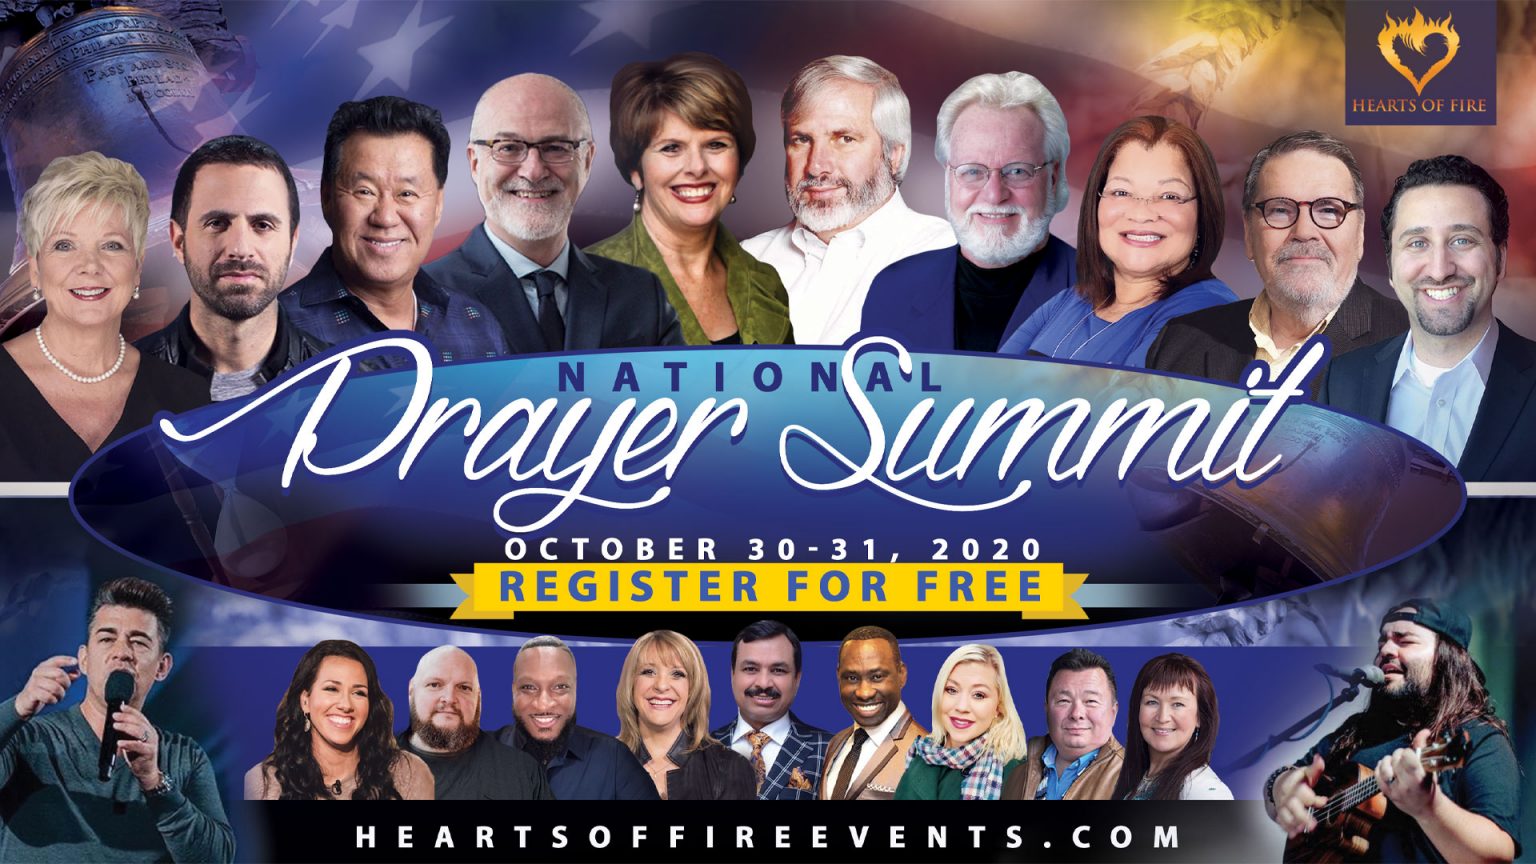 National Prayer Summit - Heart of Fire Intl.